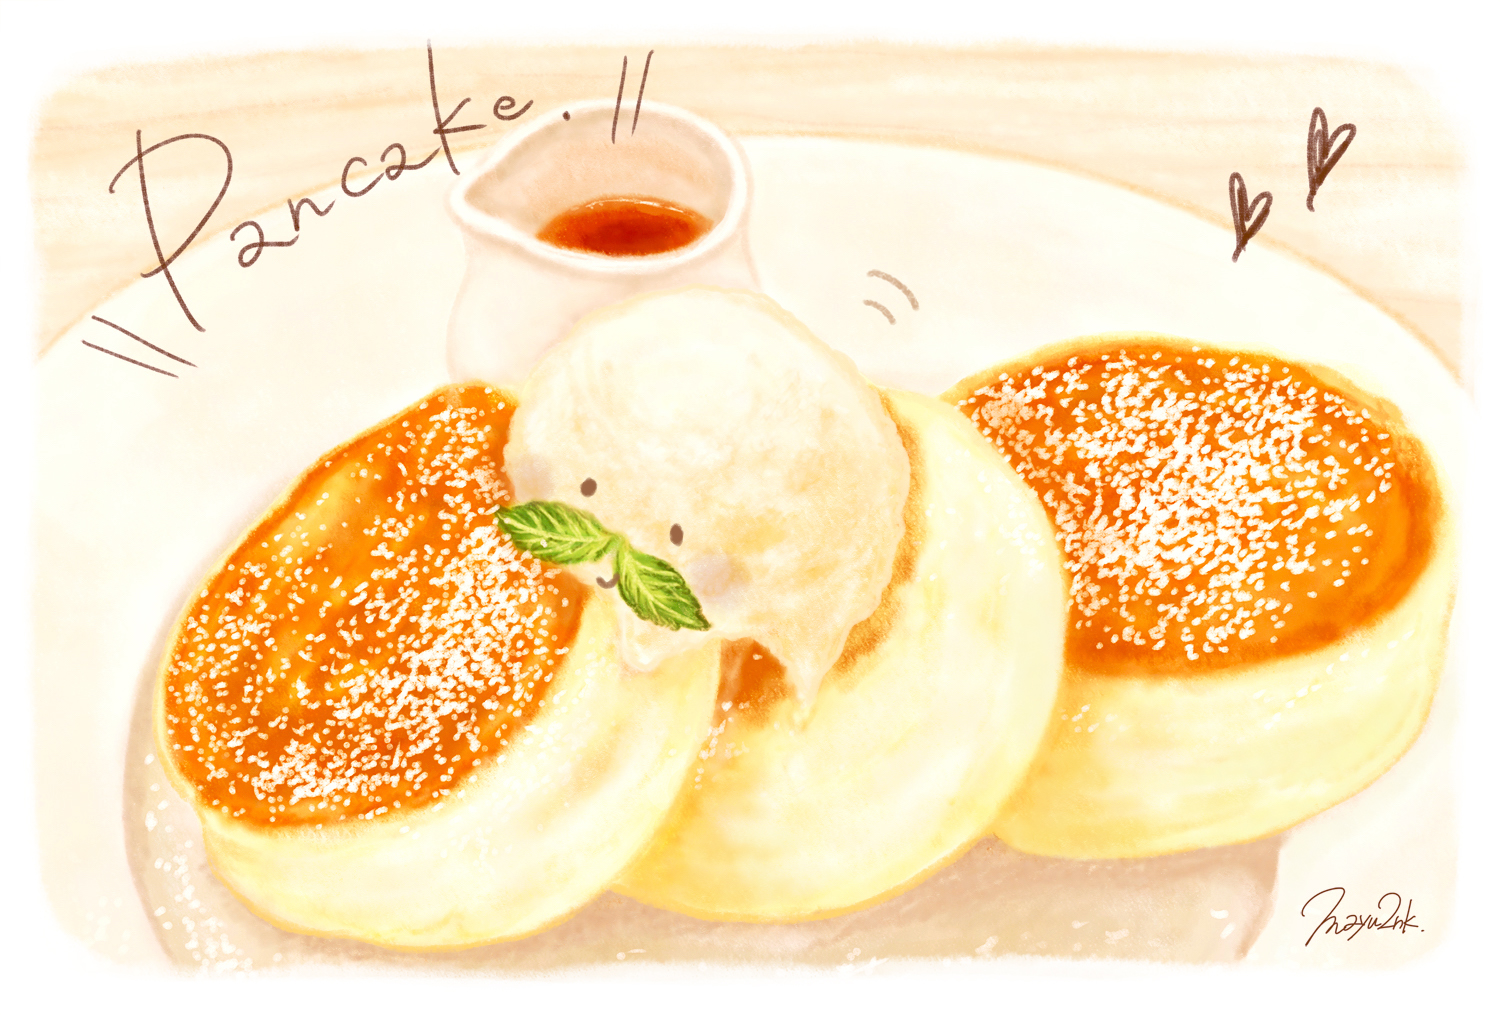 神戸で食べたパンケーキのイラスト Free Blog 岡山のイラストレーター いわさきまゆこ